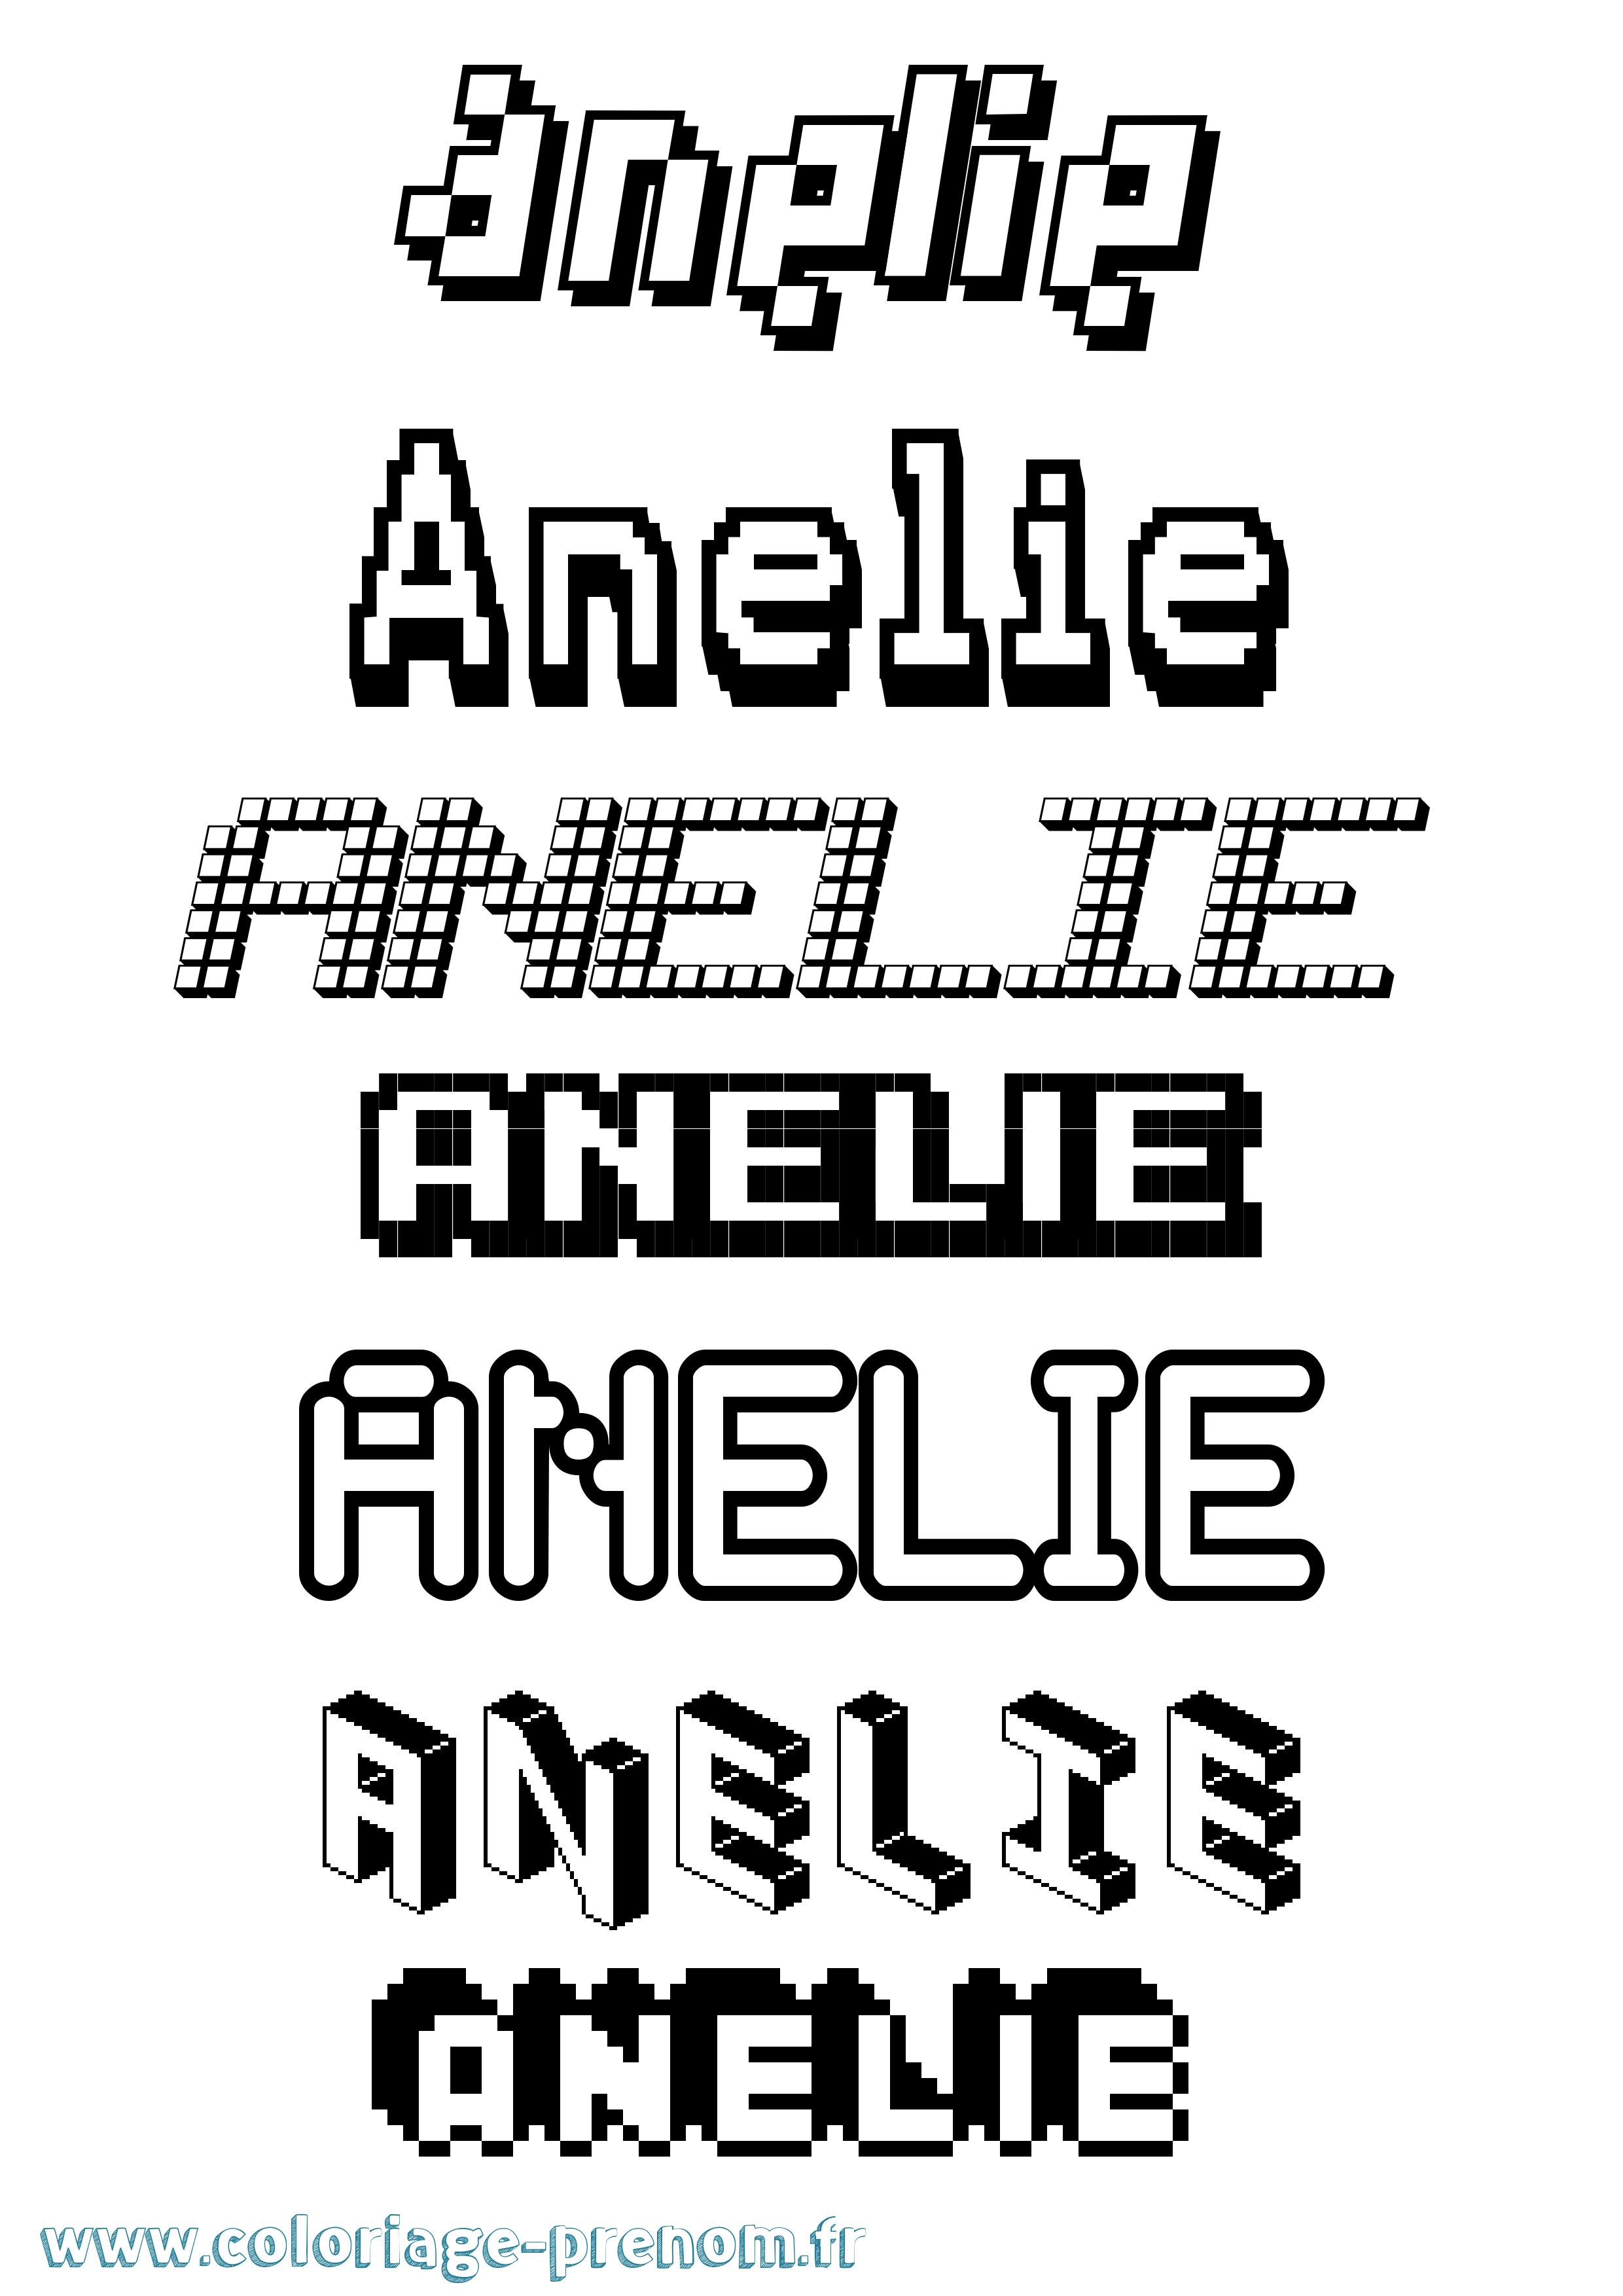 Coloriage prénom Anelie Pixel